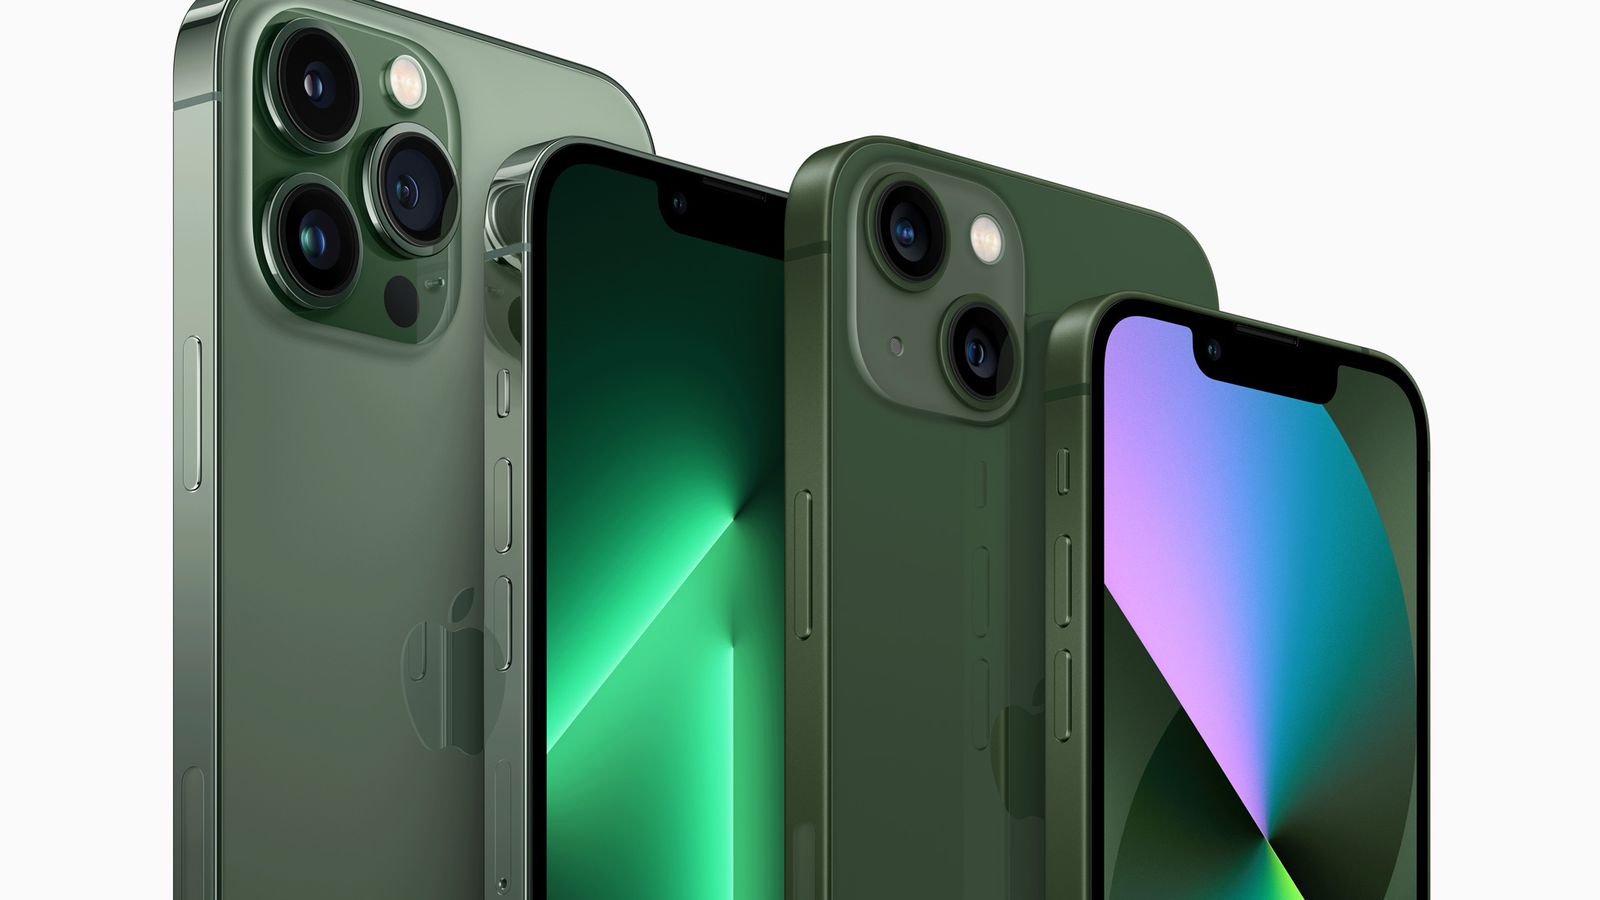 Case Colors Para iPhone 13 Pro Max Color Verde